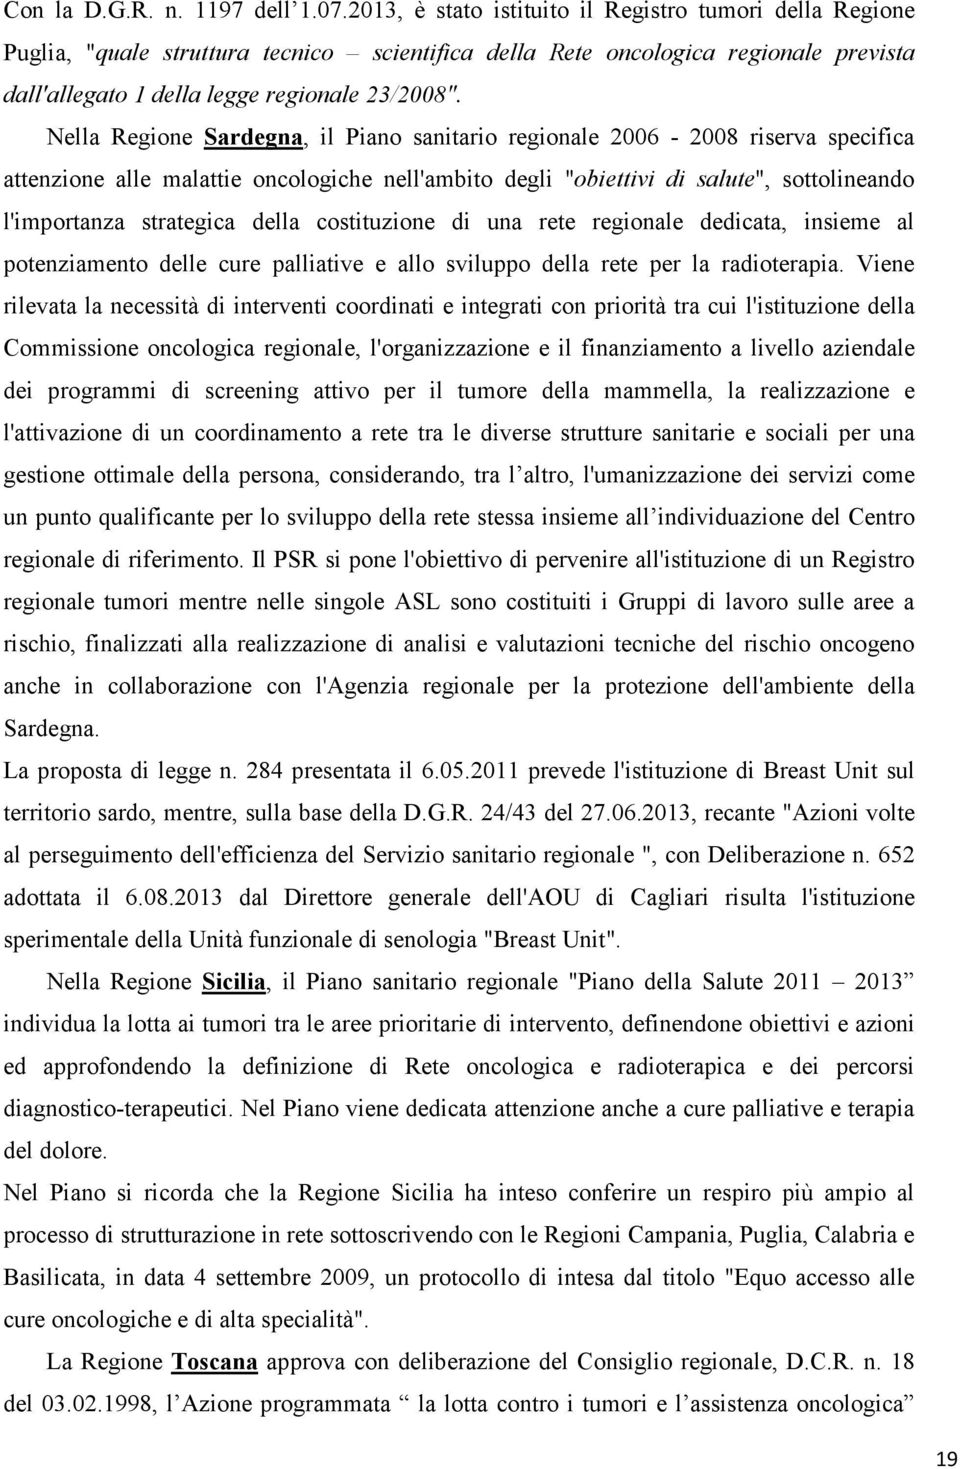 Nella Regione Sardegna, il Piano sanitario regionale 2006-2008 riserva specifica attenzione alle malattie oncologiche nell'ambito degli "obiettivi di salute", sottolineando l'importanza strategica